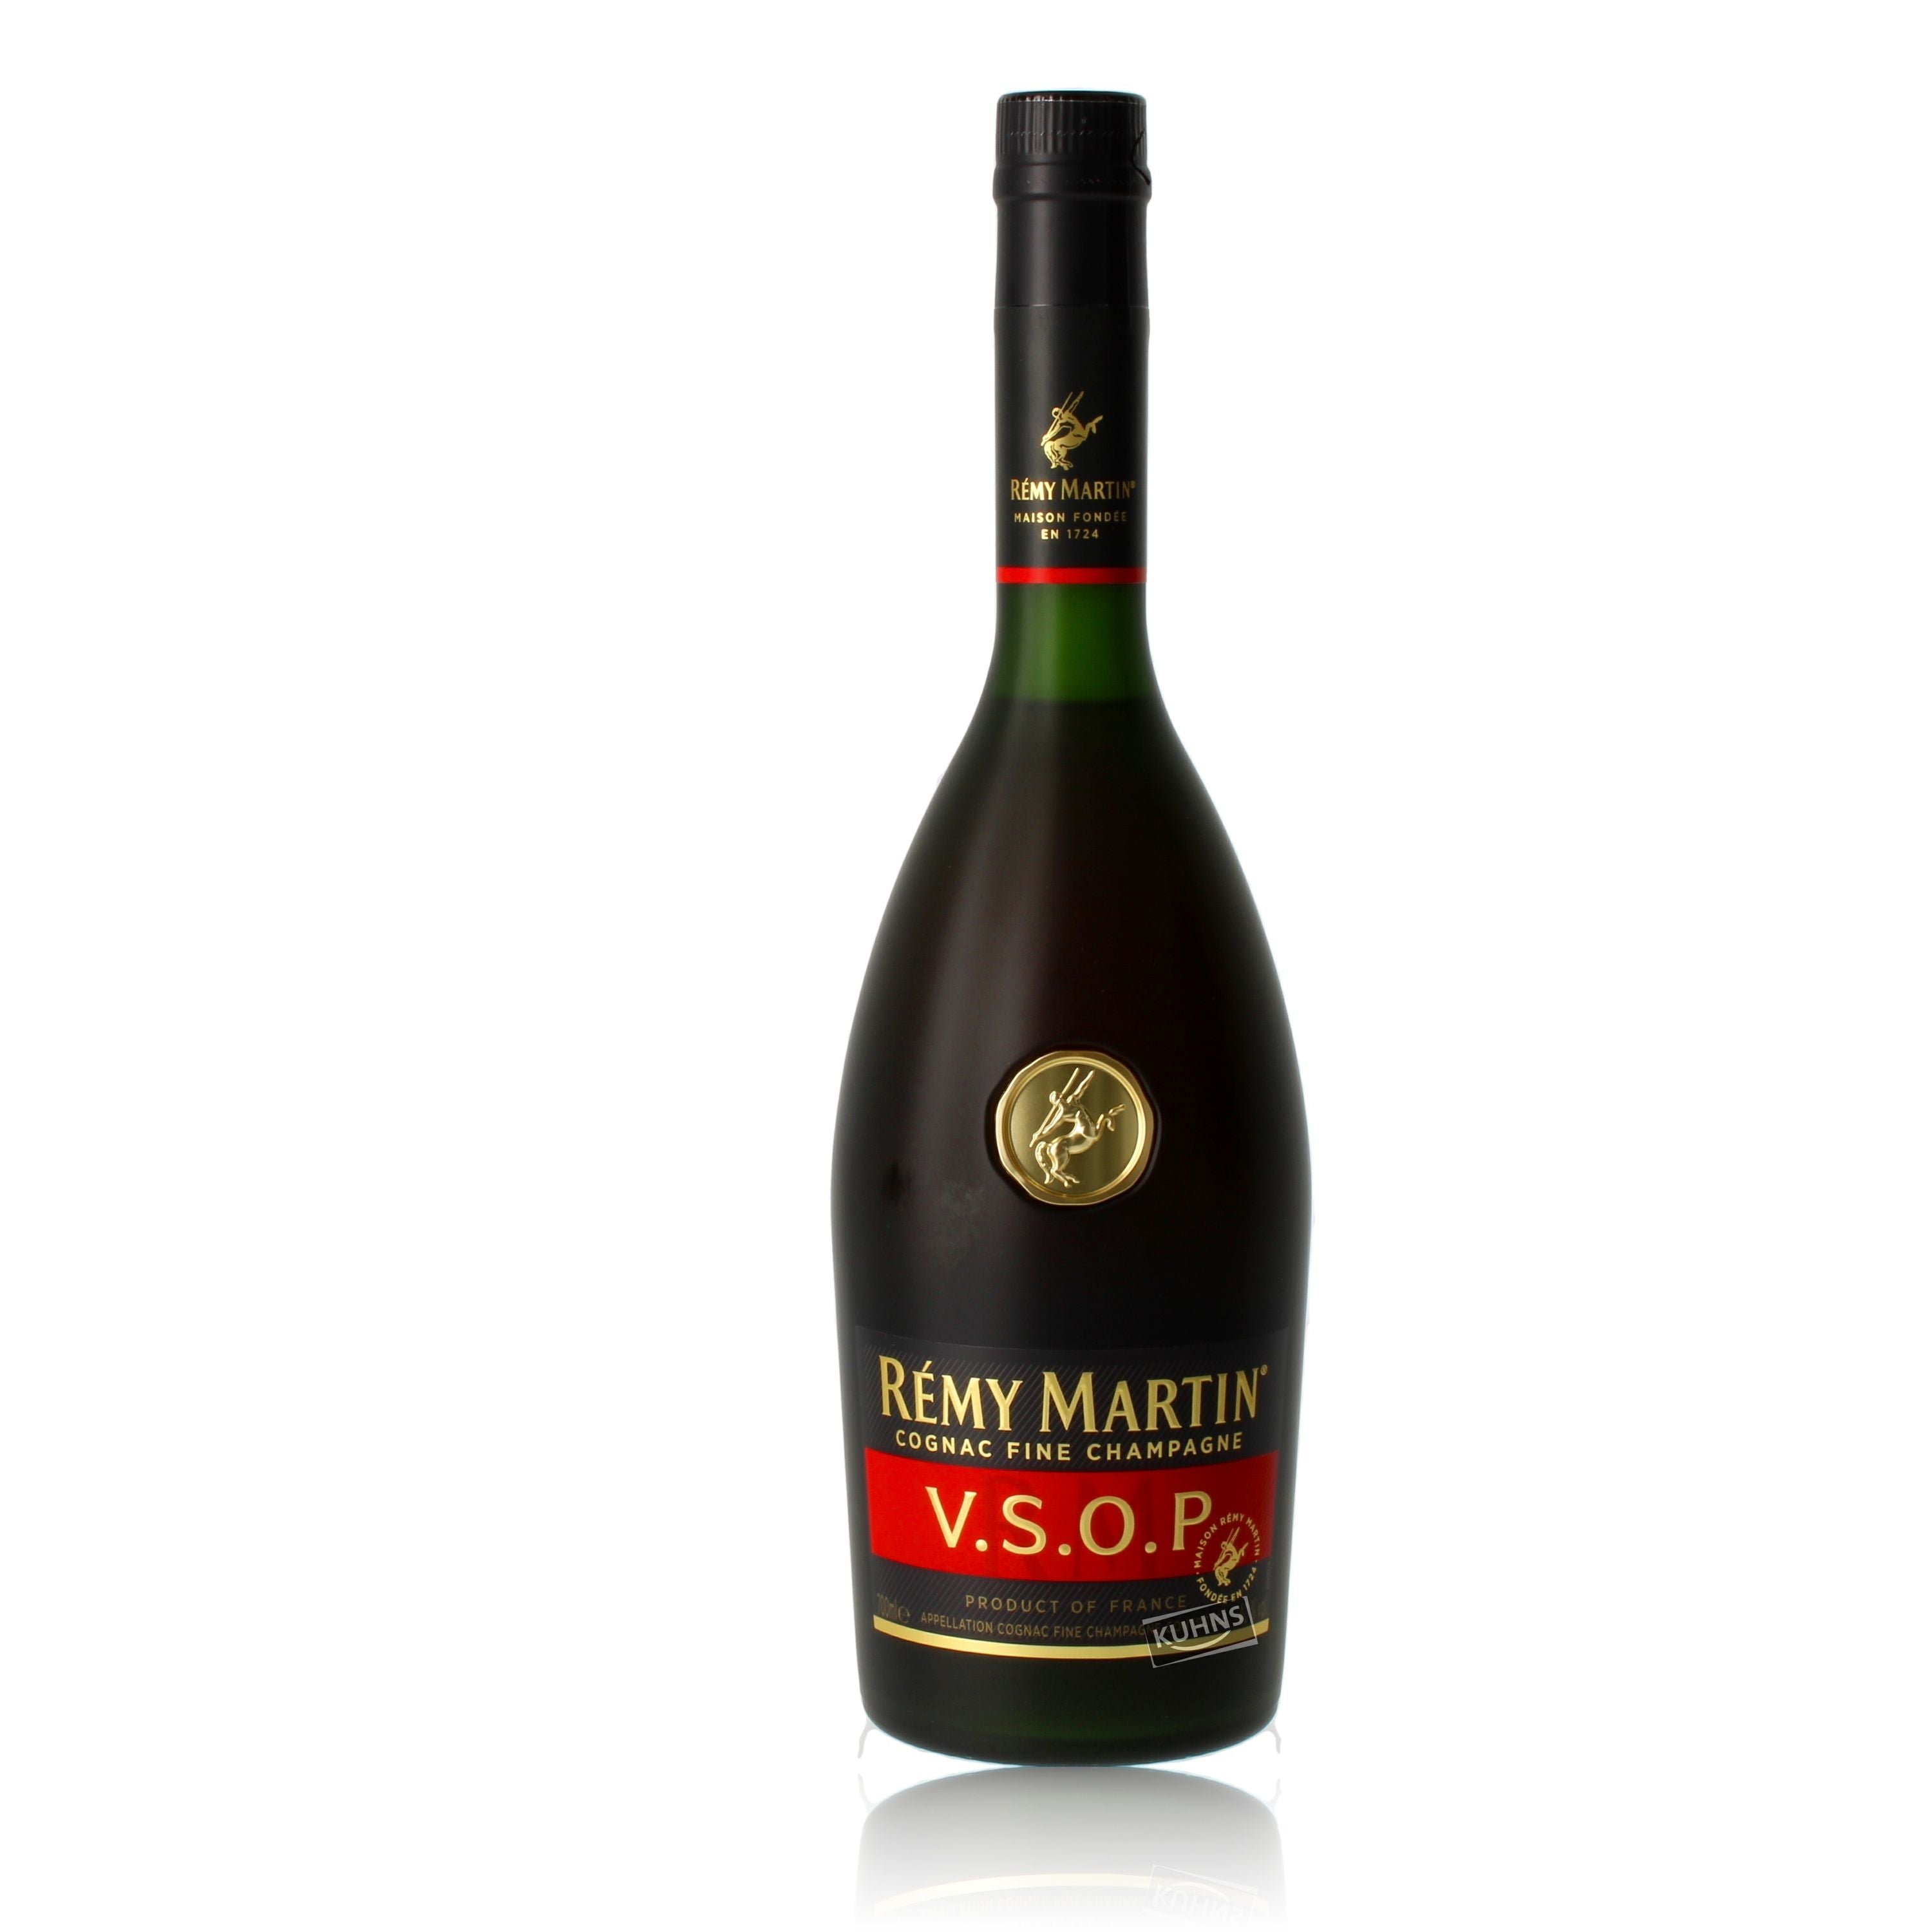 Remy Martin Cognac VSOP 0.7l, alc. 40% vol., Cognac France